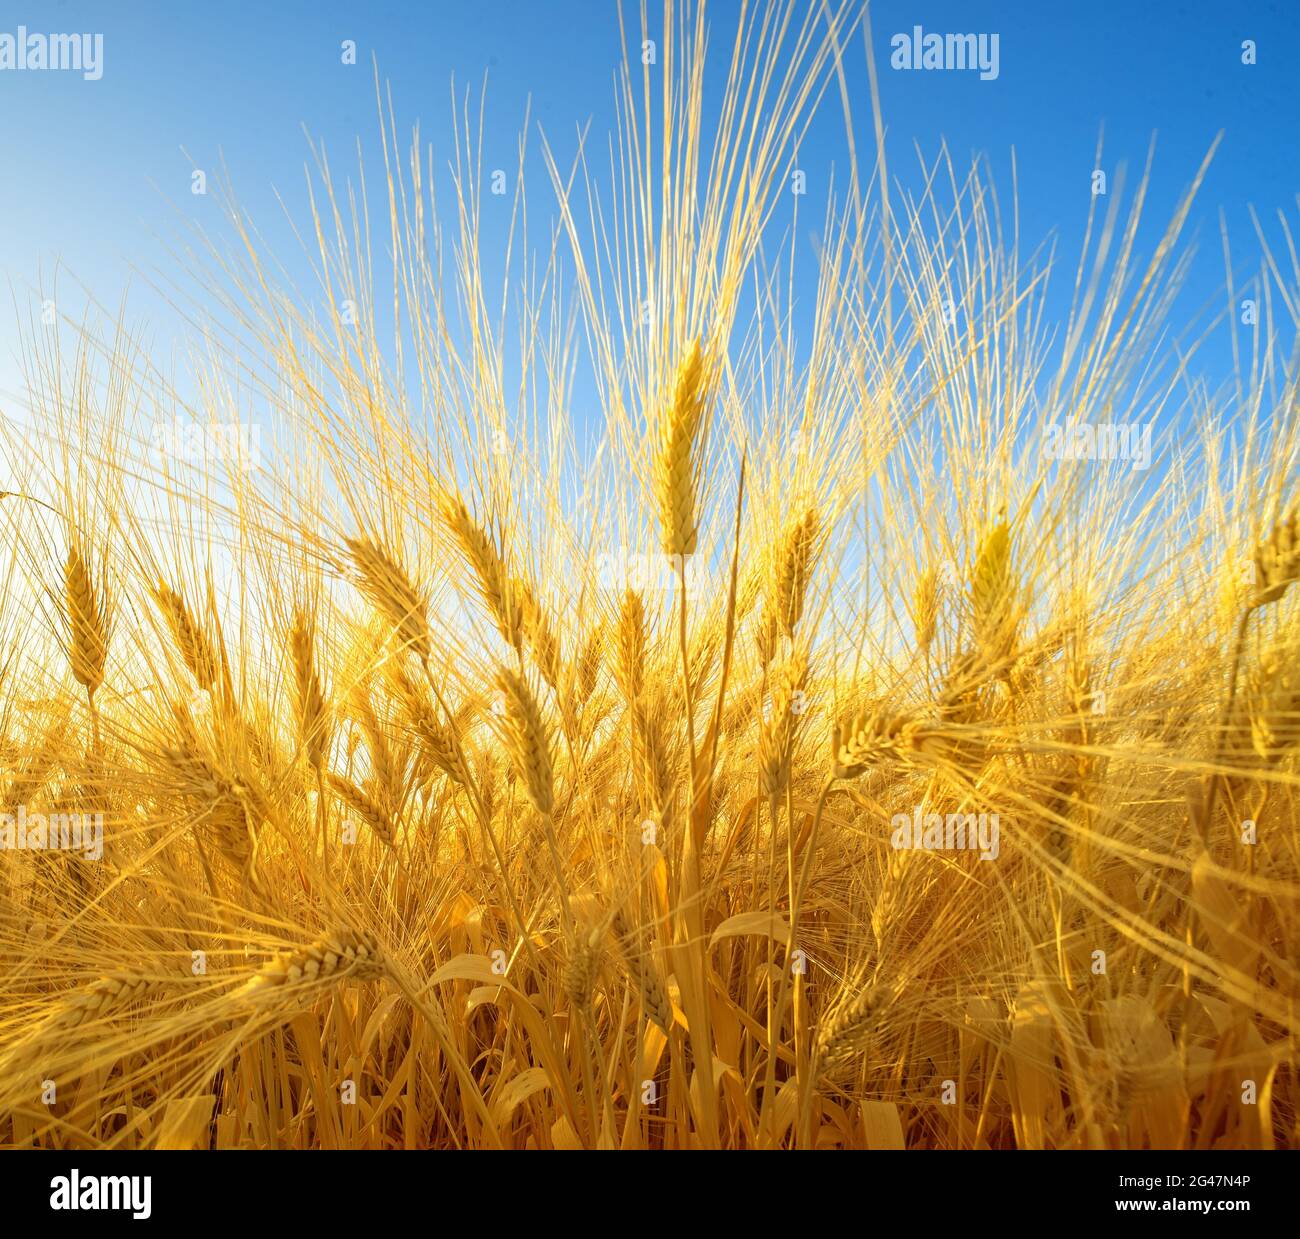 Dramatische Nahaufnahme des Weizenfeldes mit reifen goldenen Spitzen, Weitwinkelperspektive Stockfoto